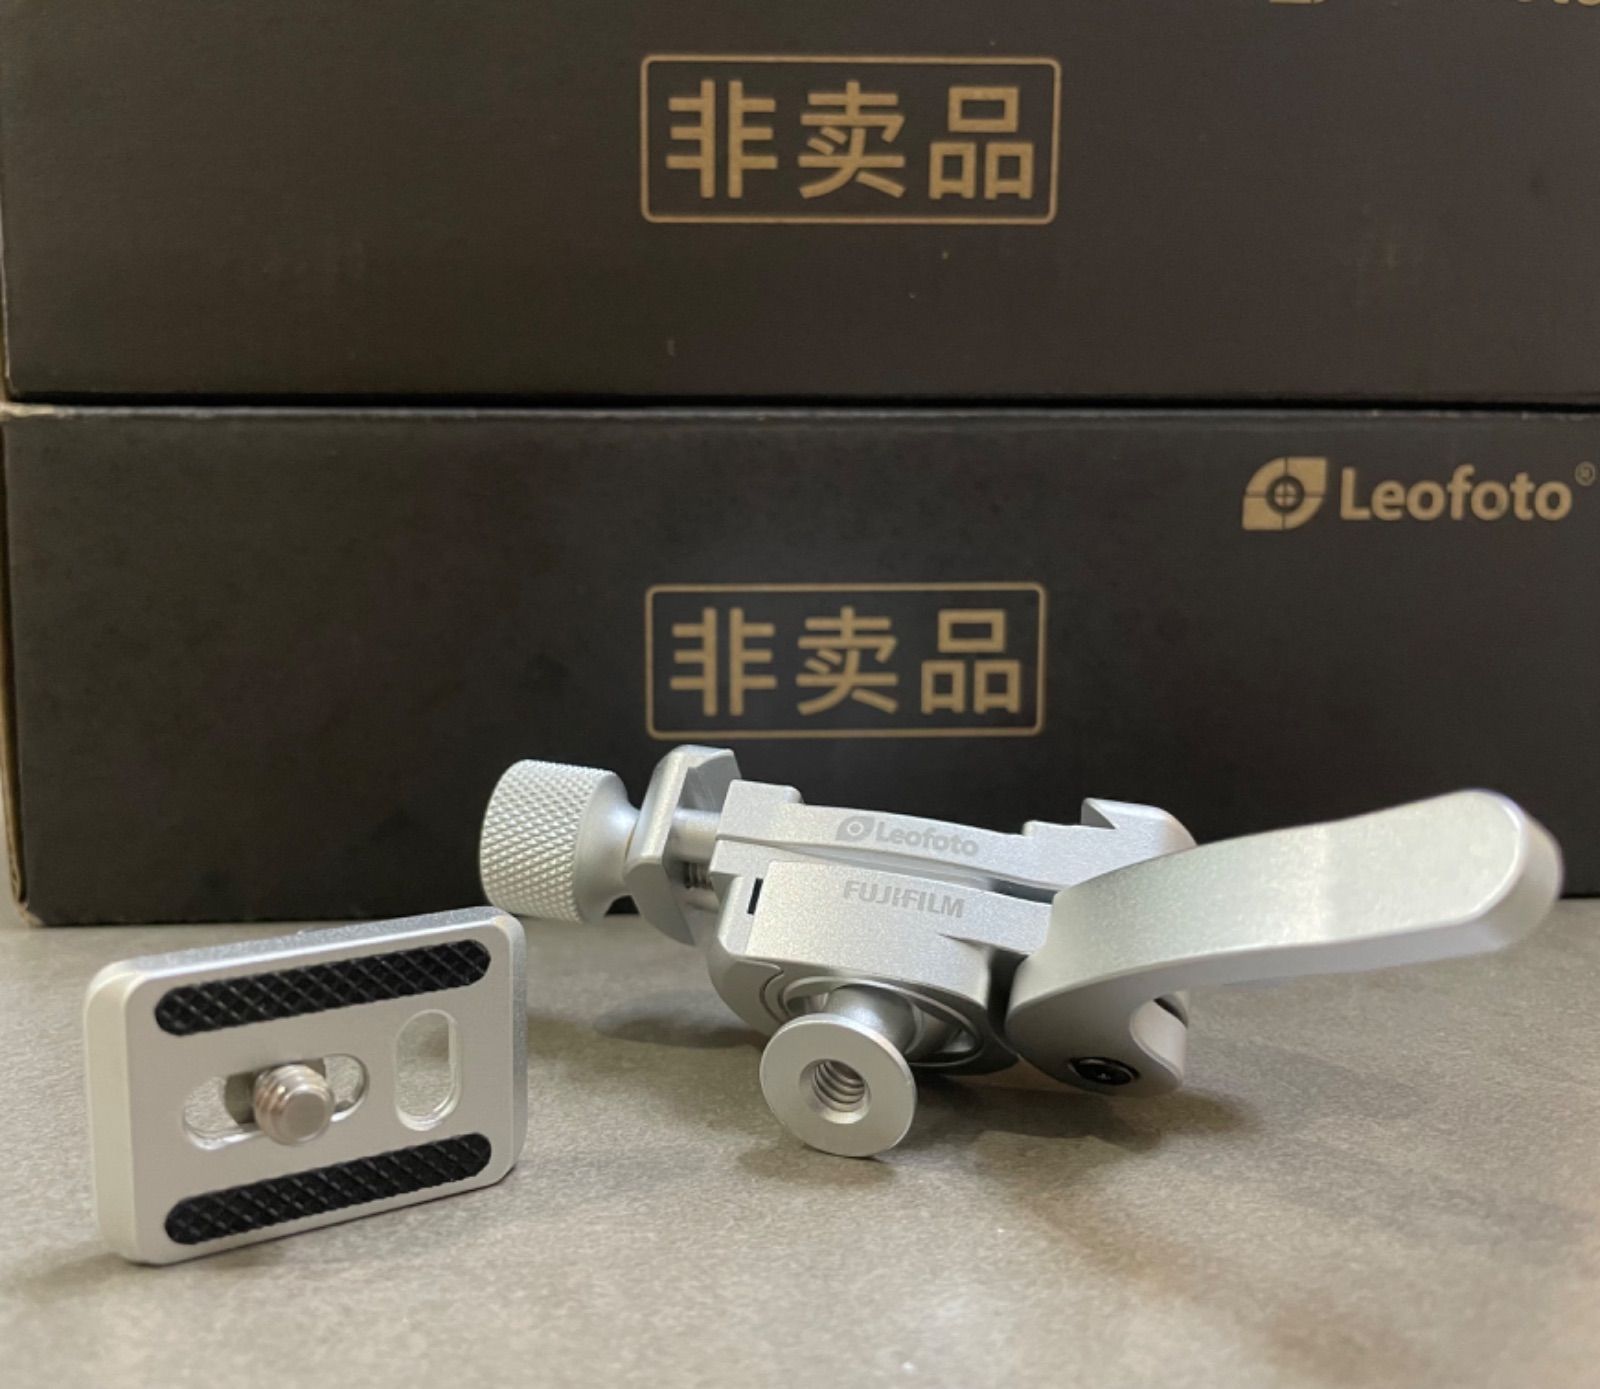 新品 Leofoto FUJIFILMコラボmbc-18 小型雲台 プレート付き - メルカリ